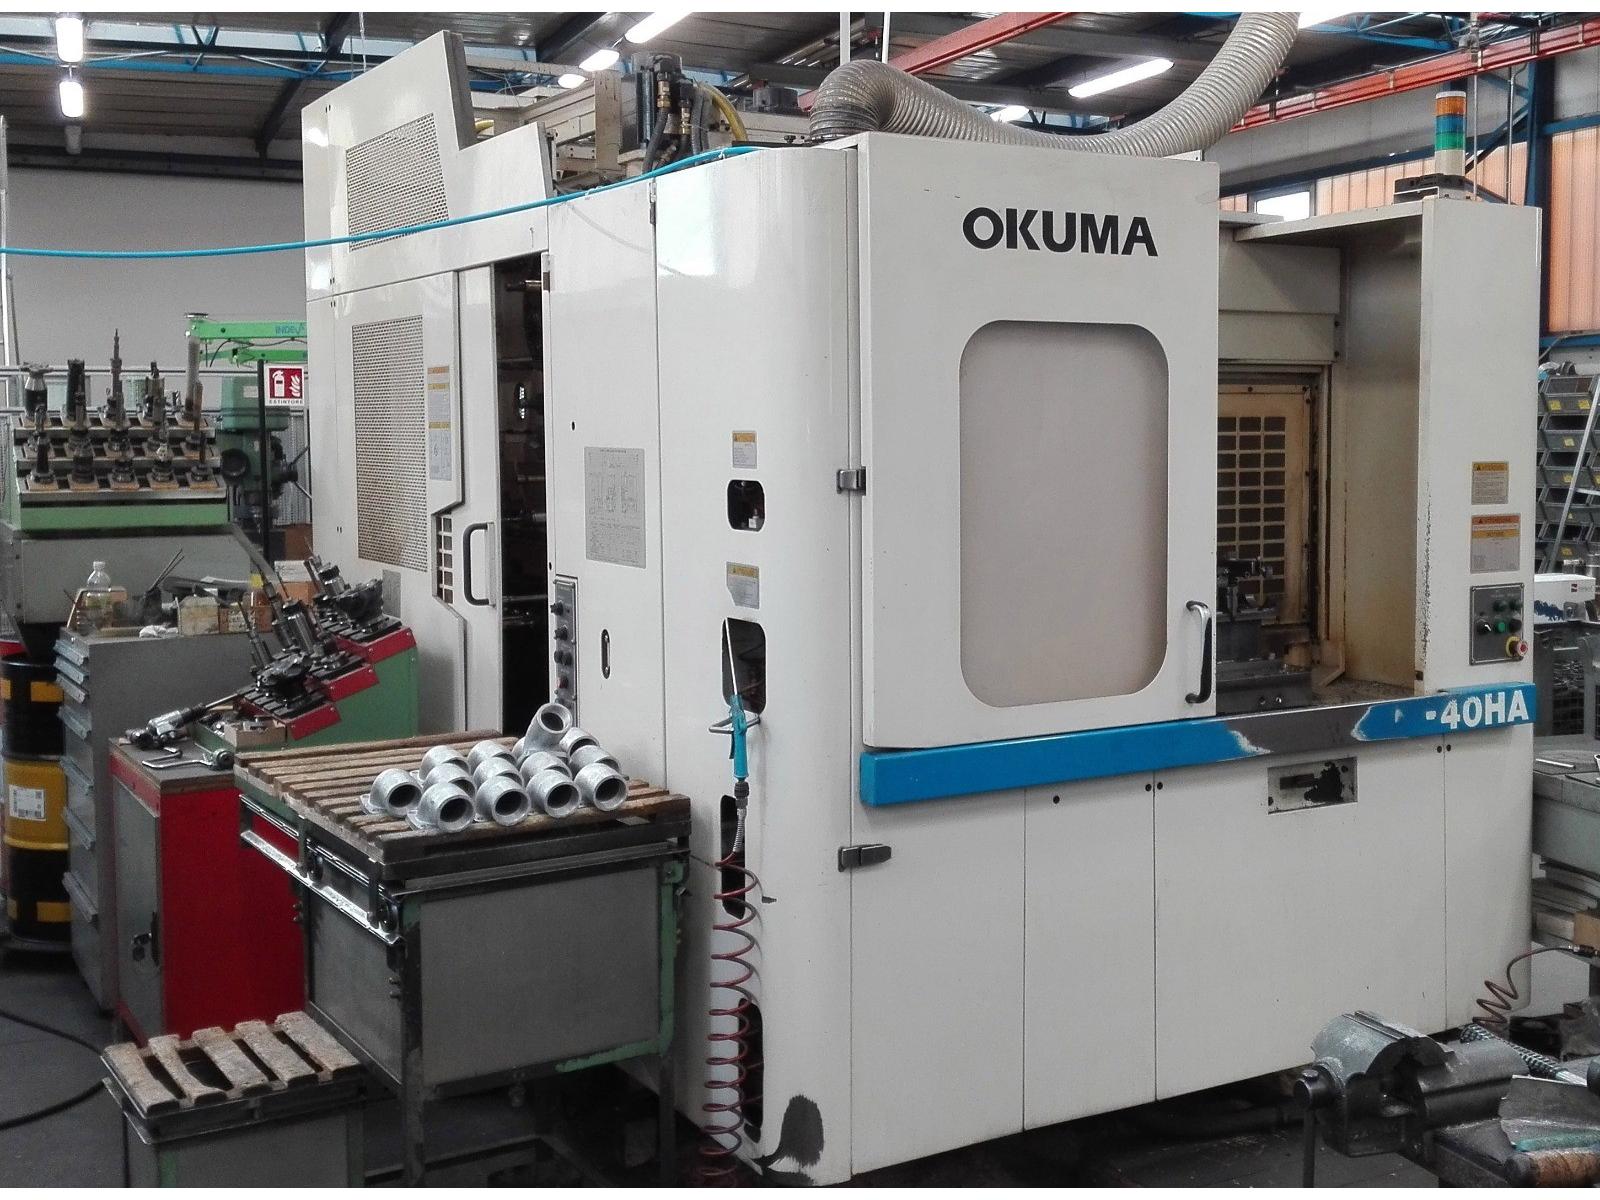 Centro di lavoro marca Okuma modello MX 40 HA